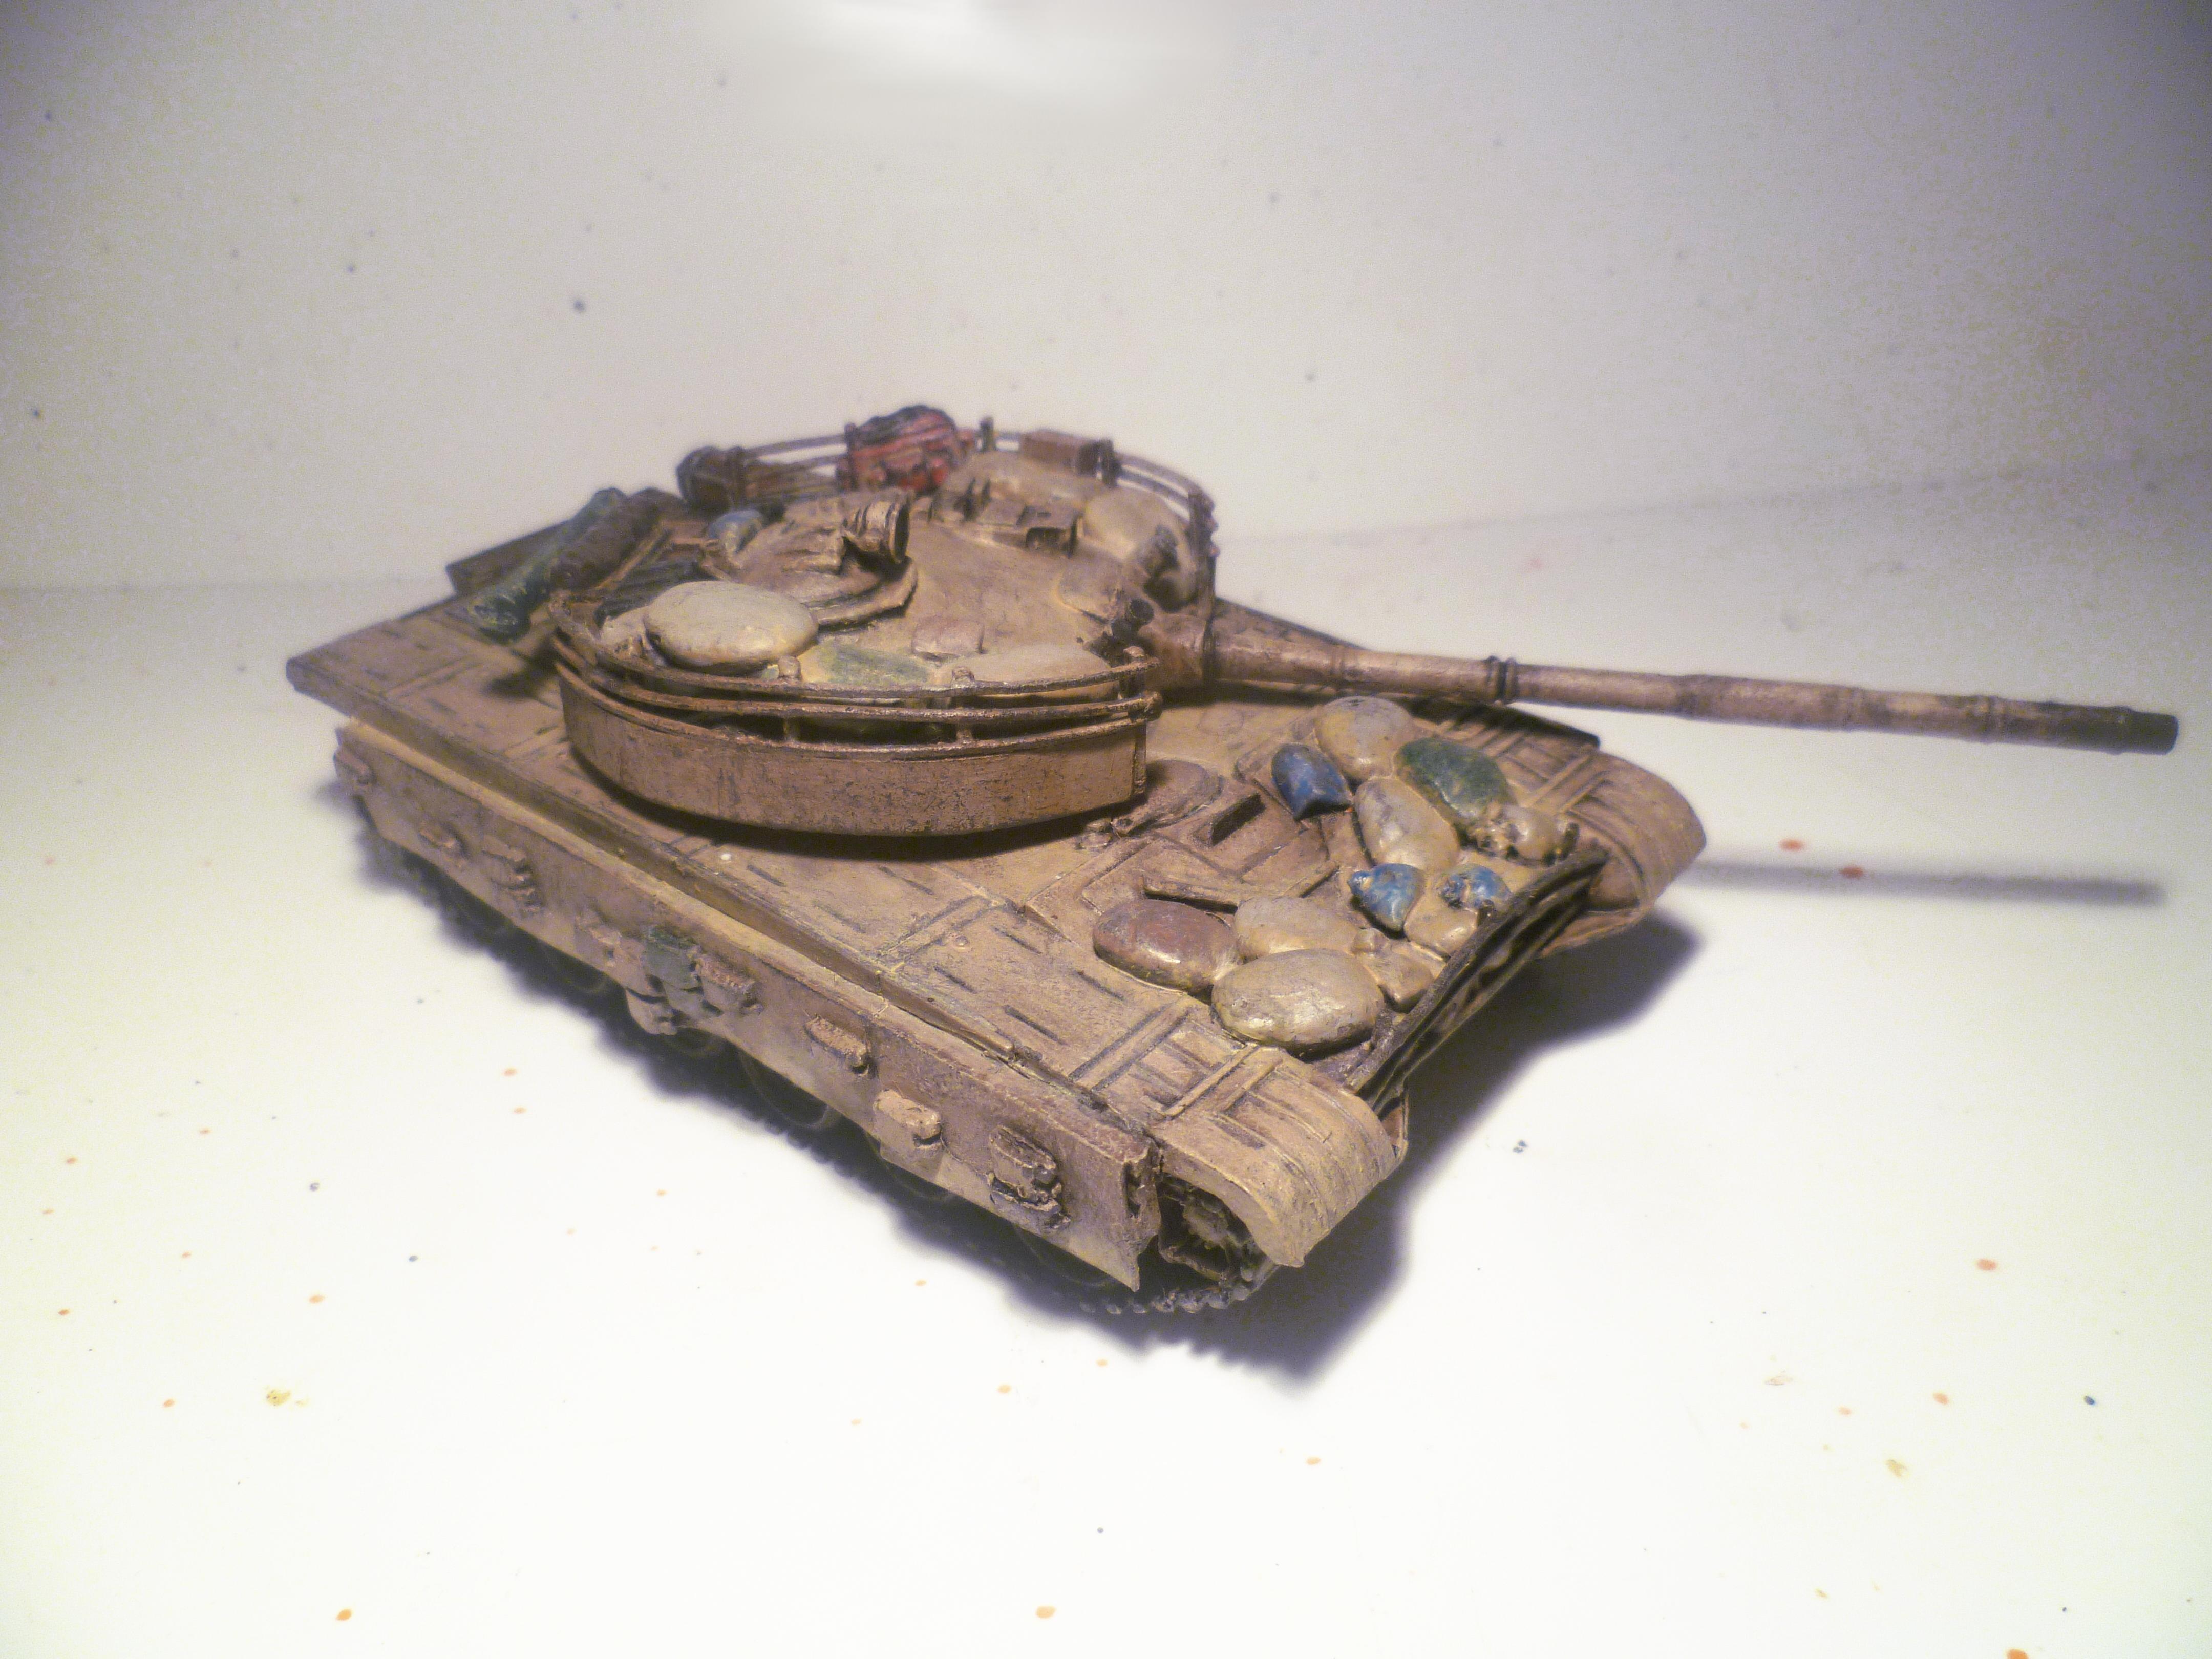 T-72U